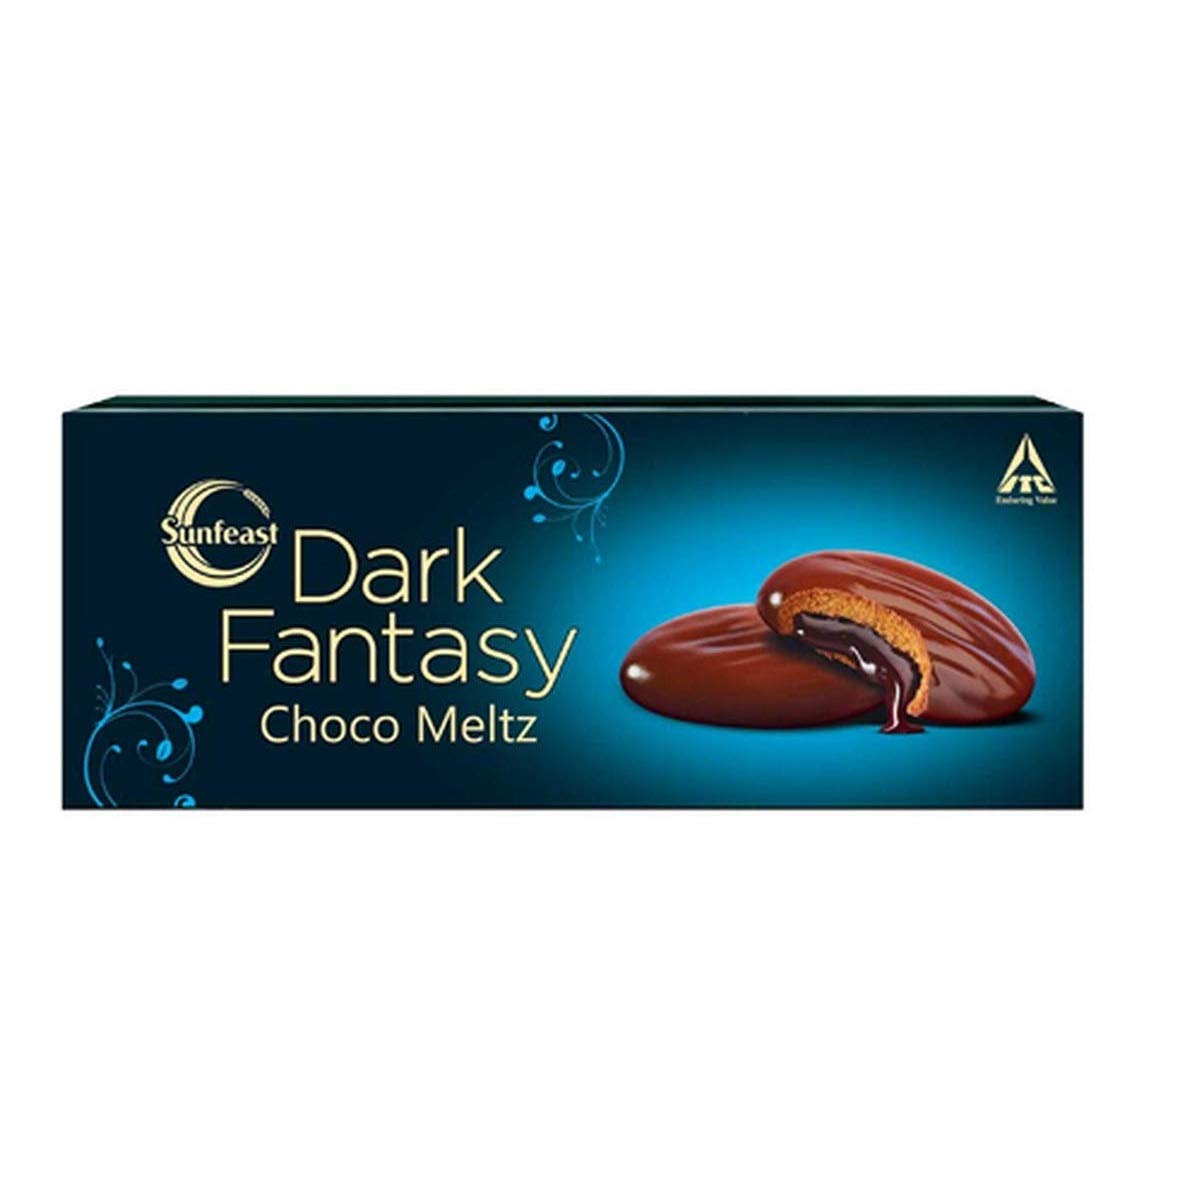 Dark Fantasy Choco Meltz Cookies